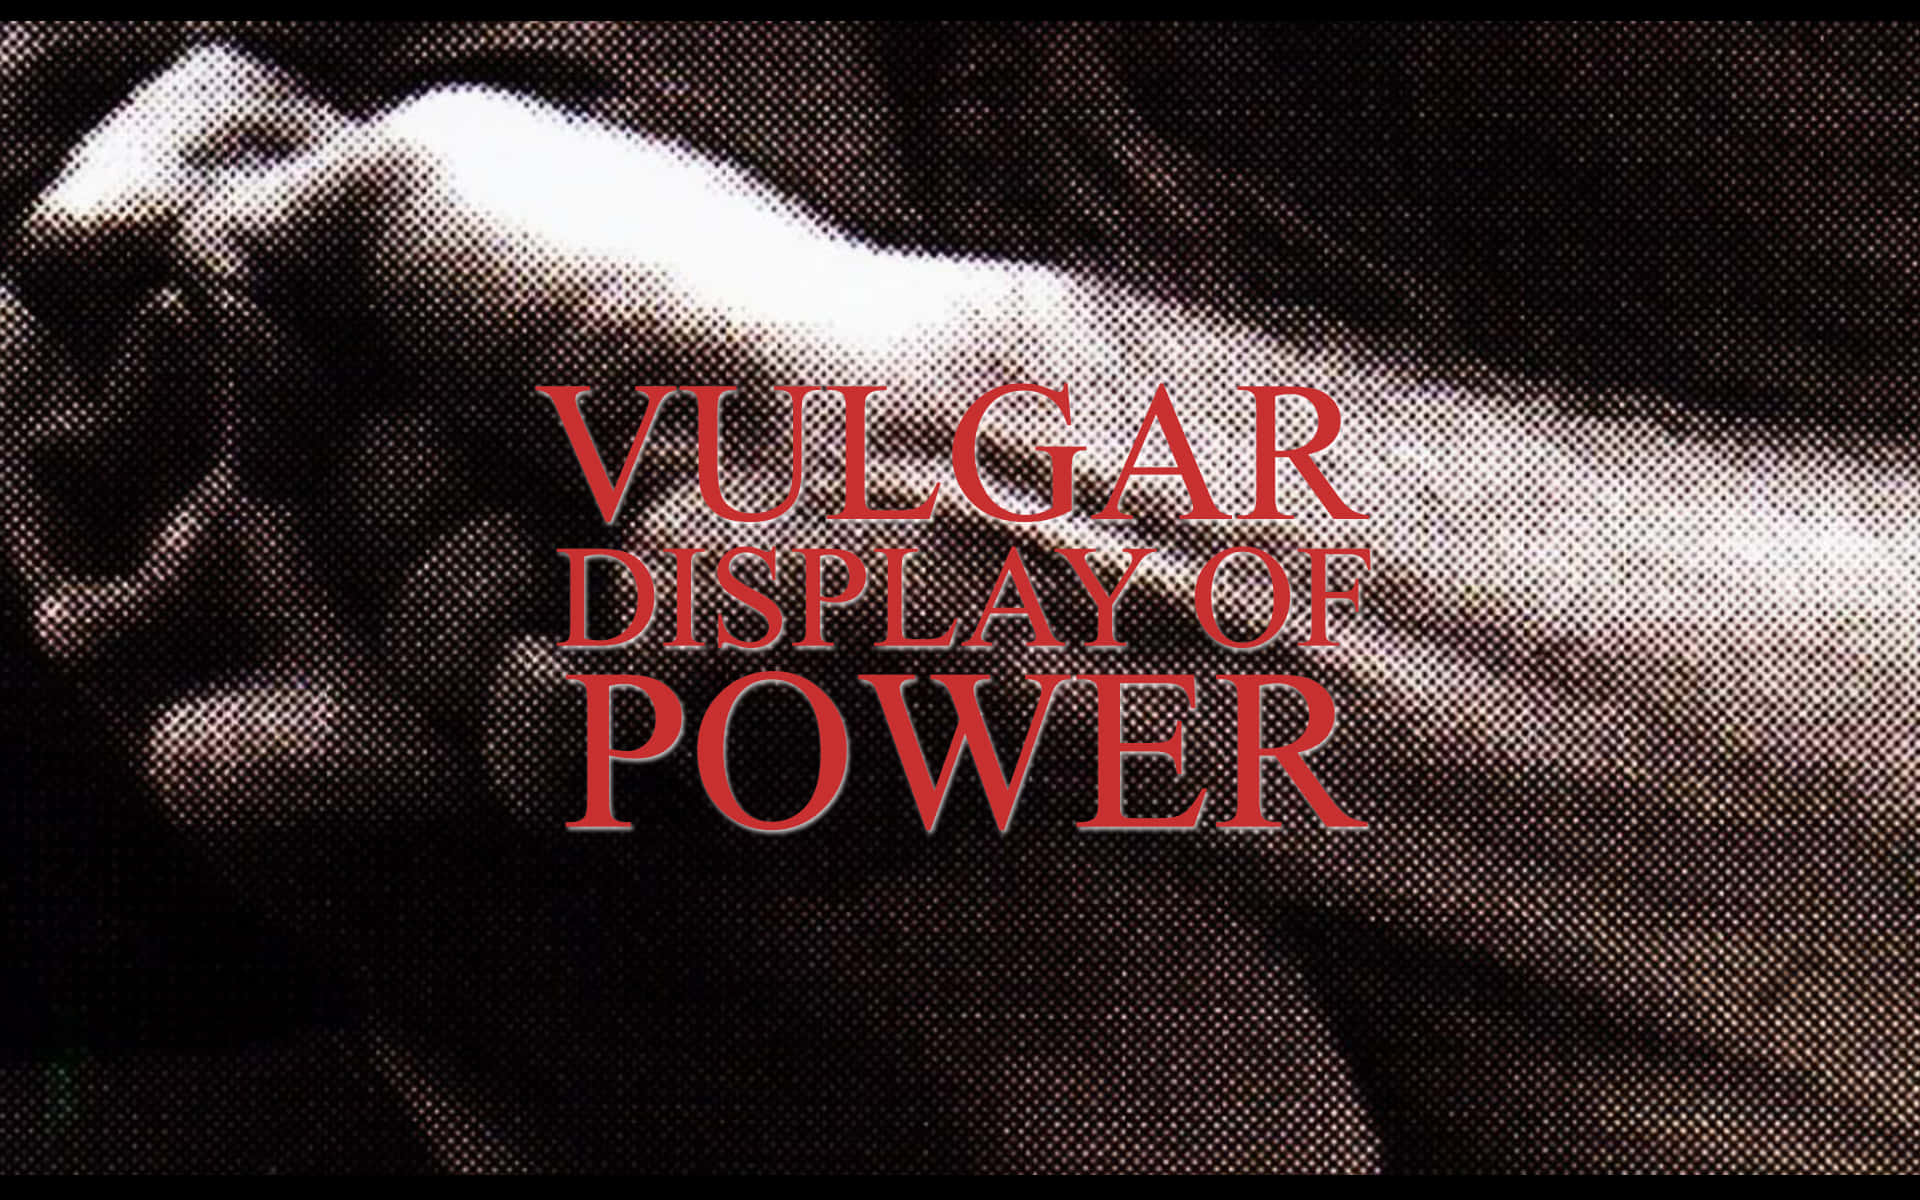 Vulgar Display Of Power [wallpaper] Wallpaper